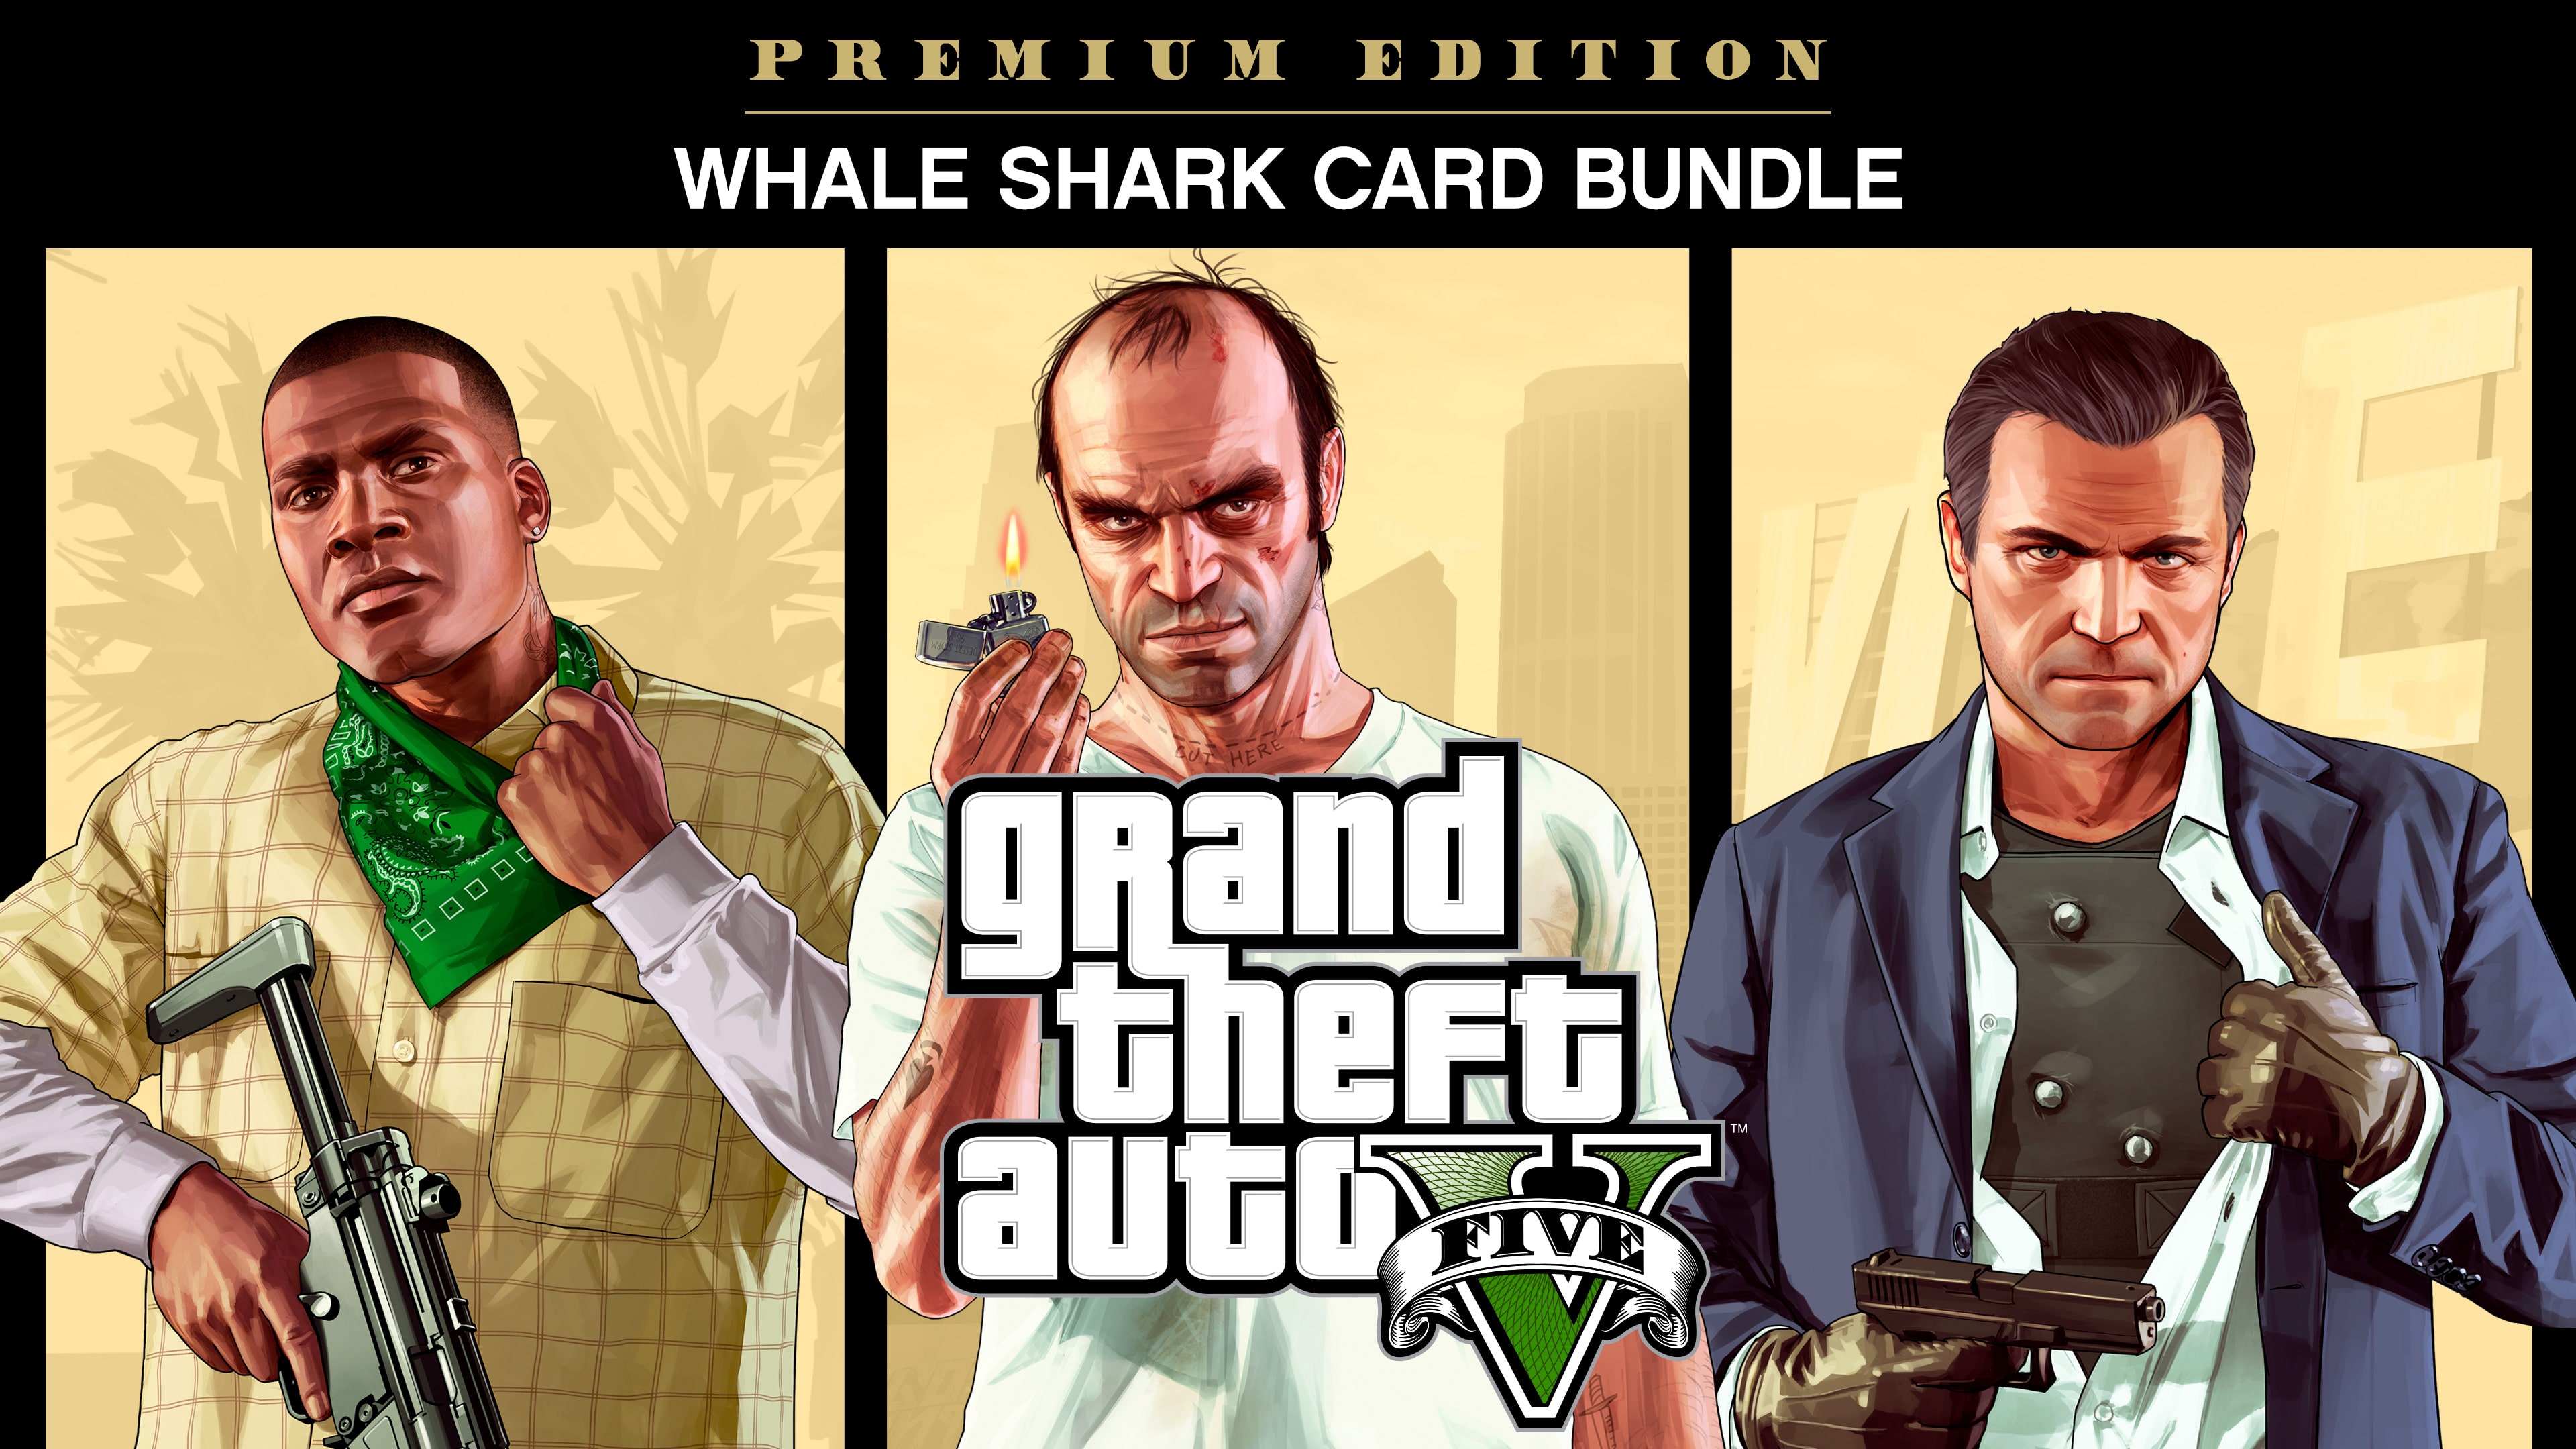 Lote de Grand Theft Auto V: Premium Edition y tarjeta Gran tiburón blanco